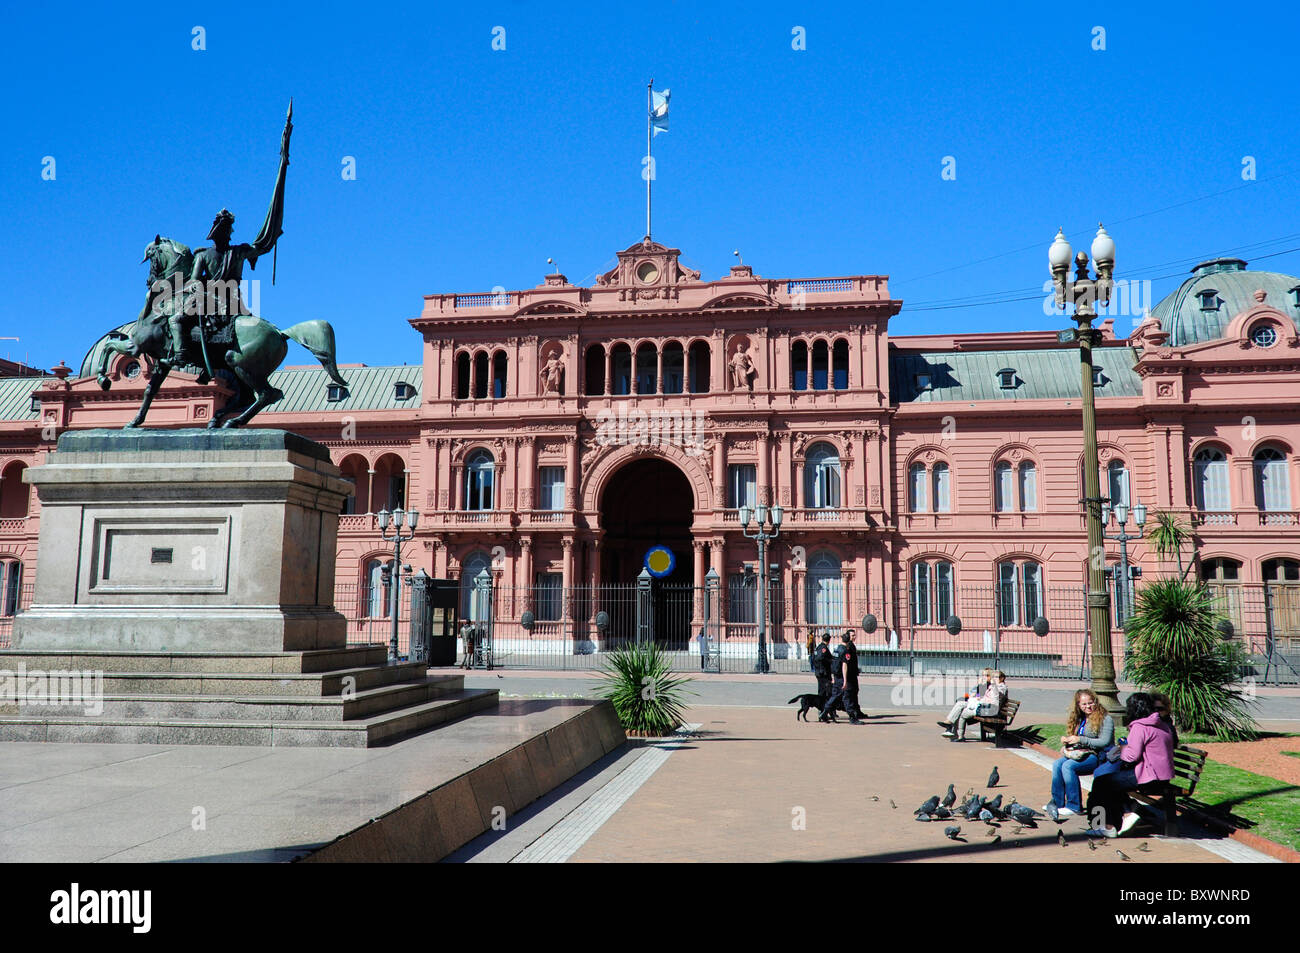 Casa Rosada, le palais présidentiel et le Général San Martin statue, Plaza de Mayo, Buenos Aires, Argentine, Amérique du Sud Banque D'Images